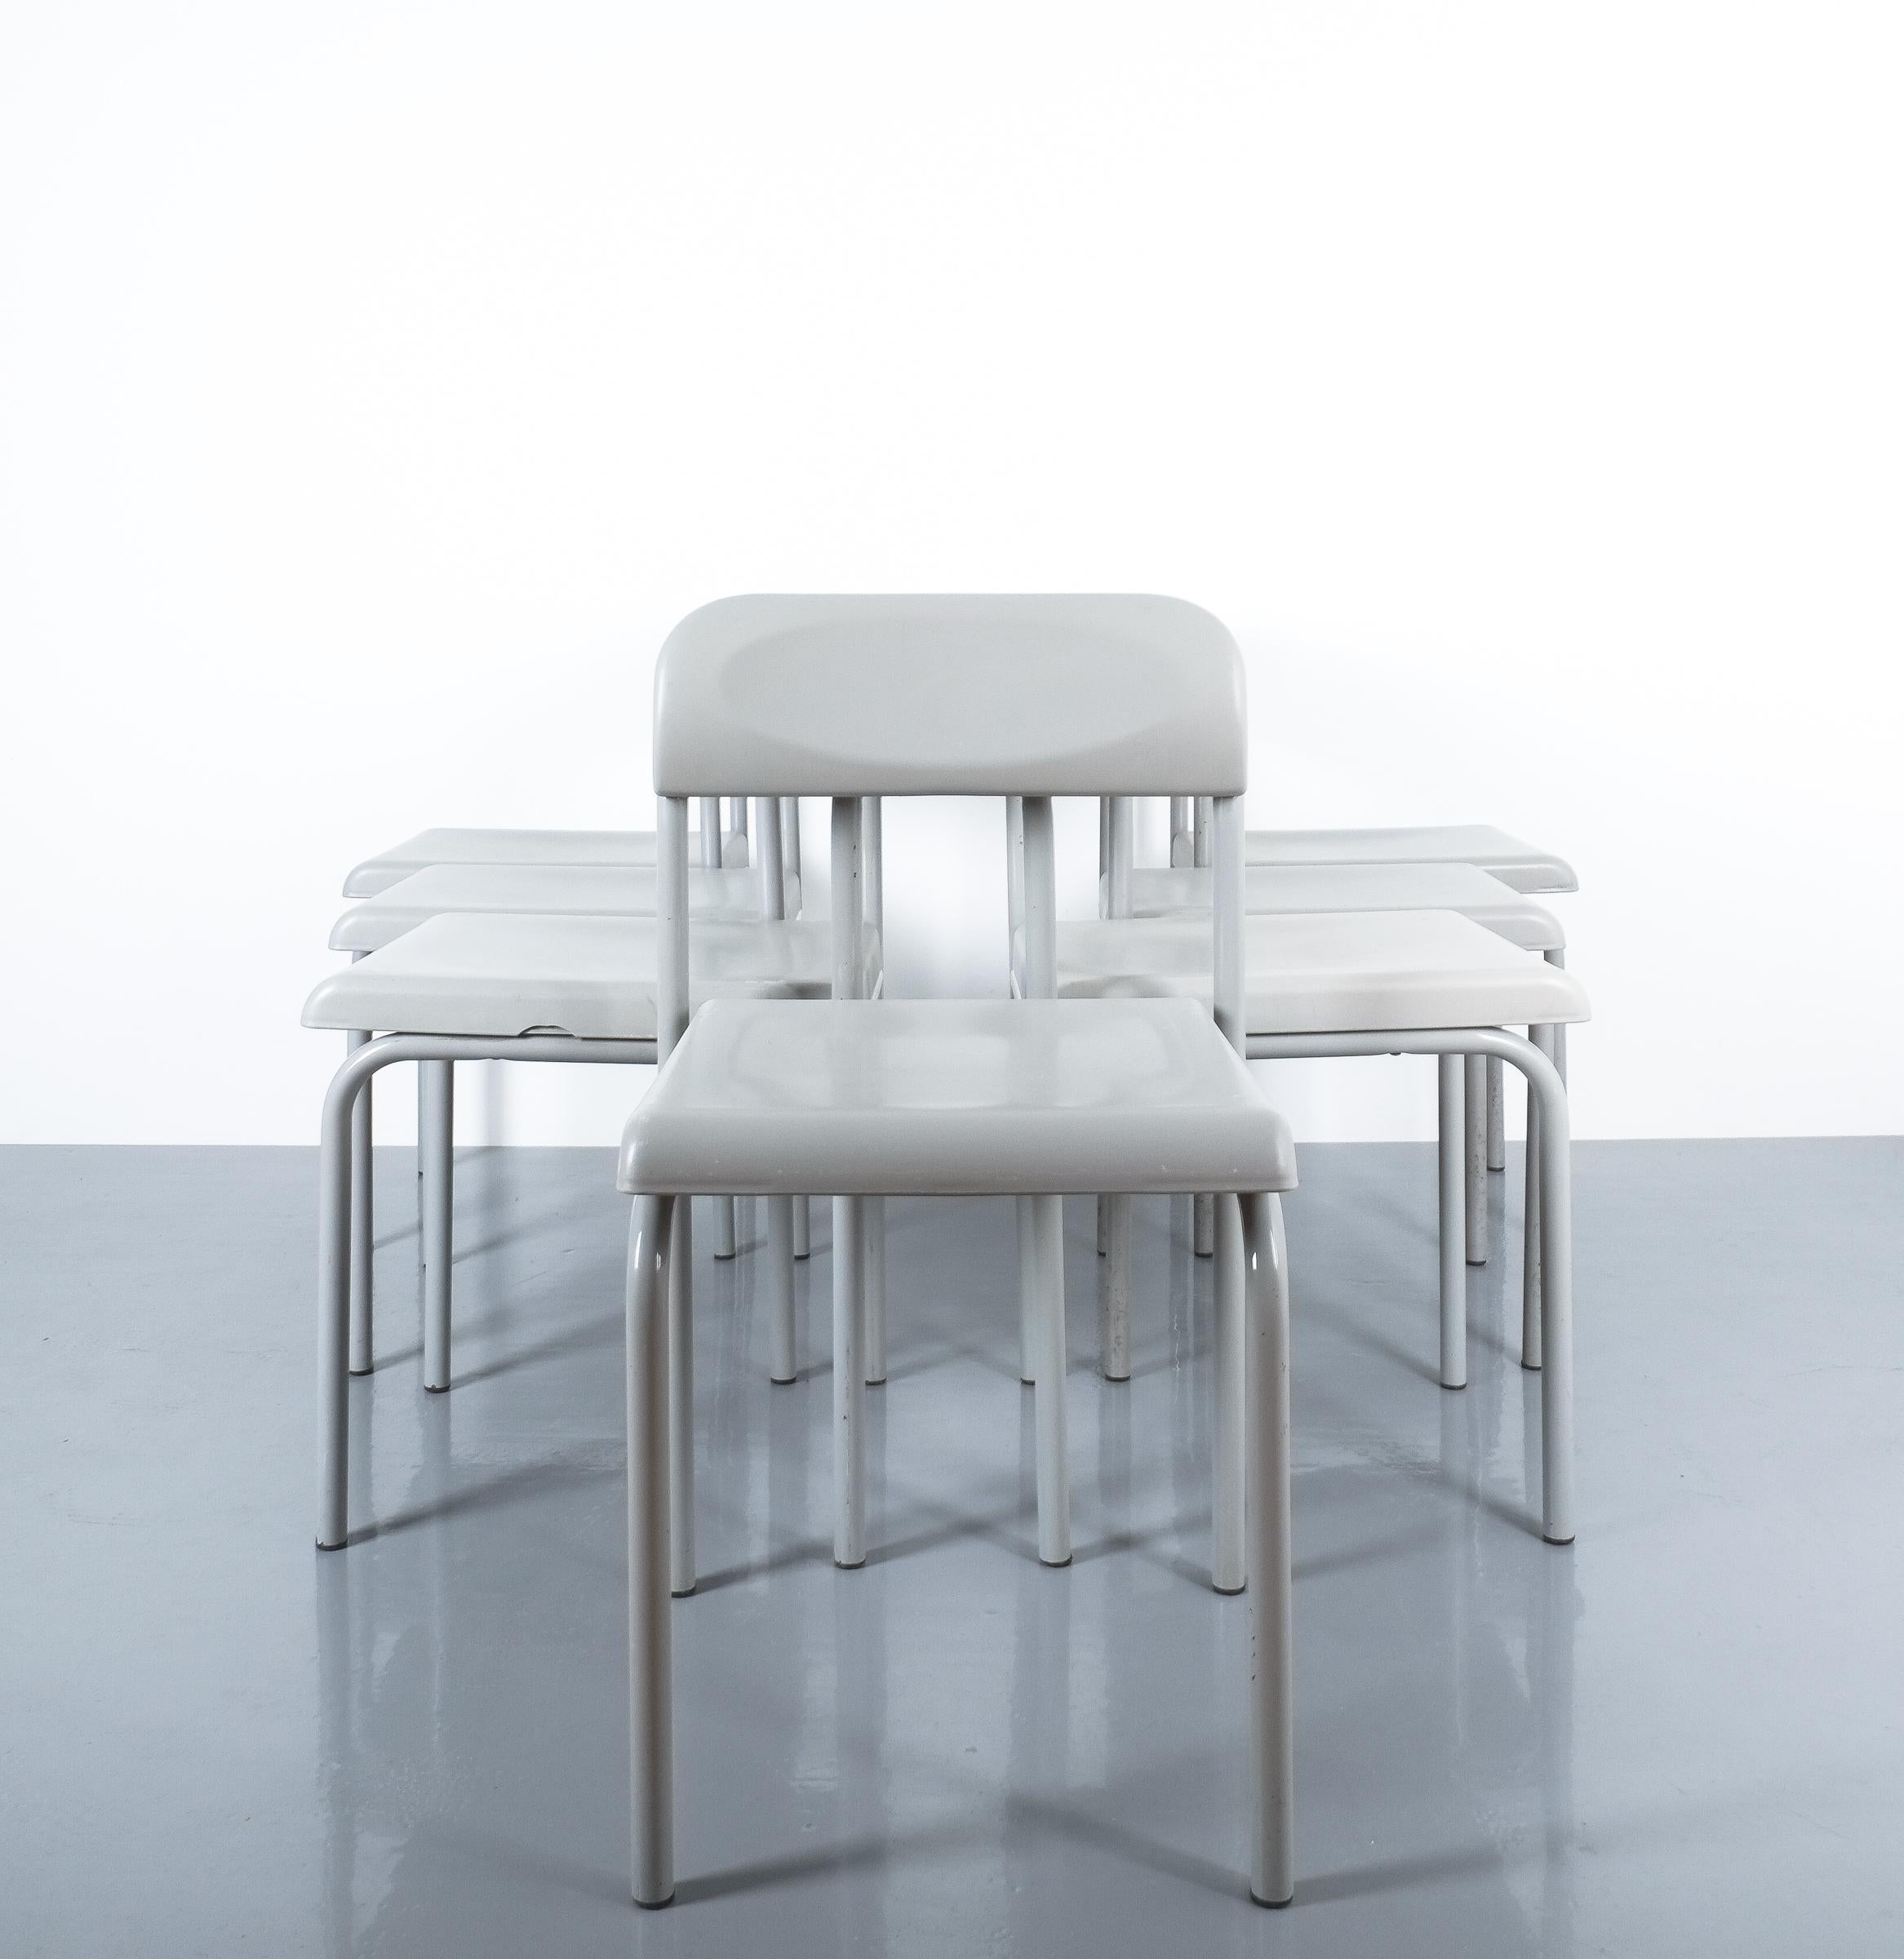 Einer von sieben griechischen Stühlen von Ettore Sottsass Grauer Bieffeplast, Italien, 1980.

Verkauft und bepreist pro Stück.

Sehr seltene hellgraue Stühle aus lackiertem Stahlrohr mit Sitz und Rückenlehne aus Kunststoff. Sie sind mit Bieffeplast